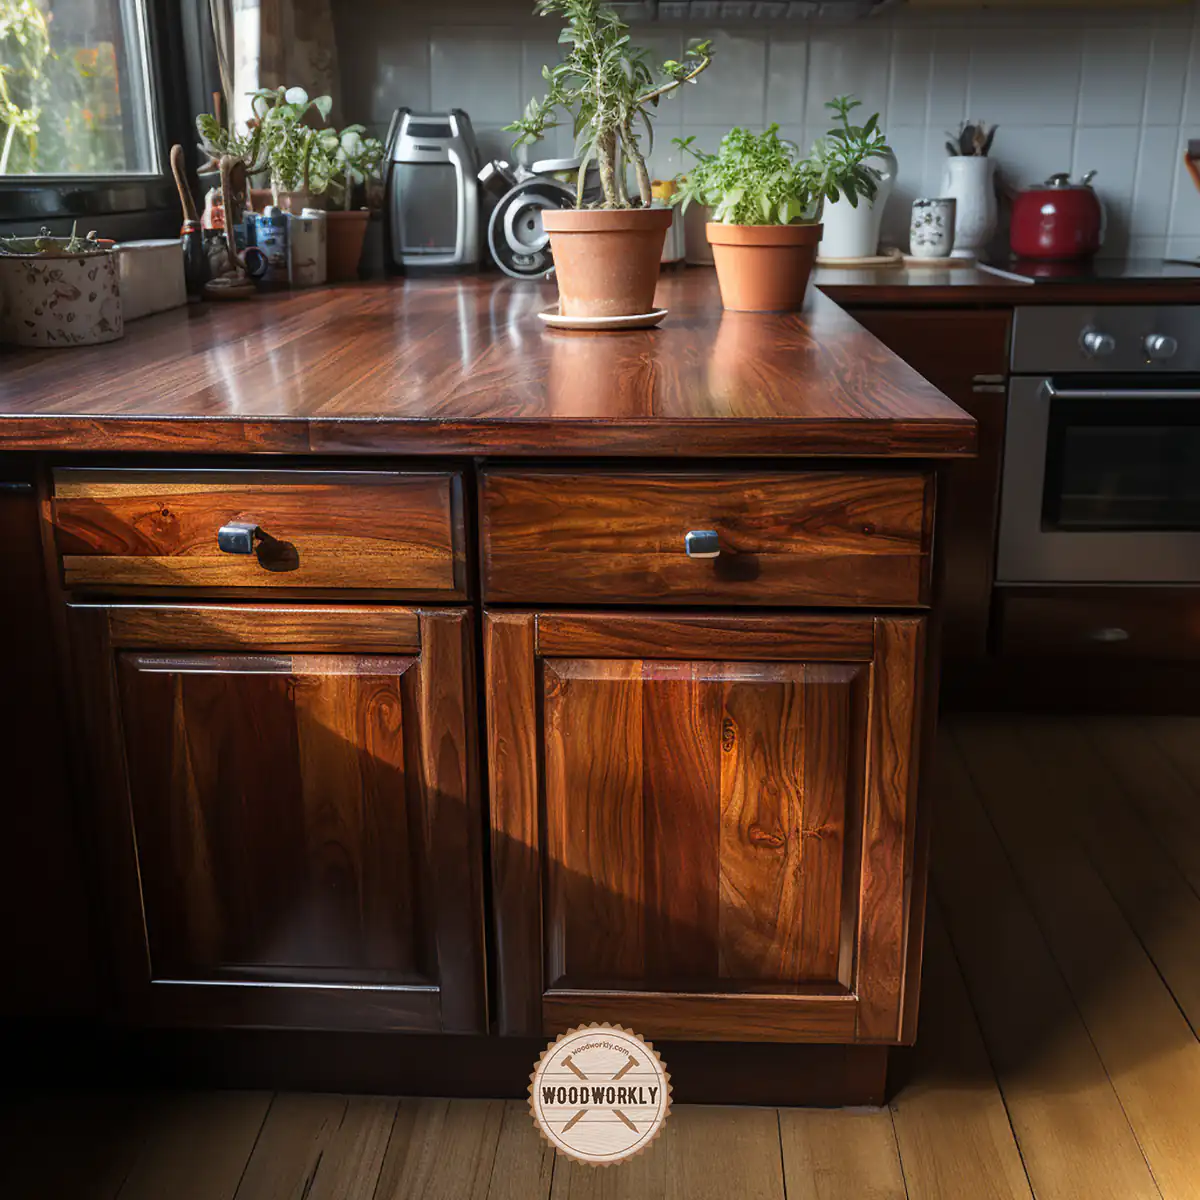 Varnished kitchen cabinet